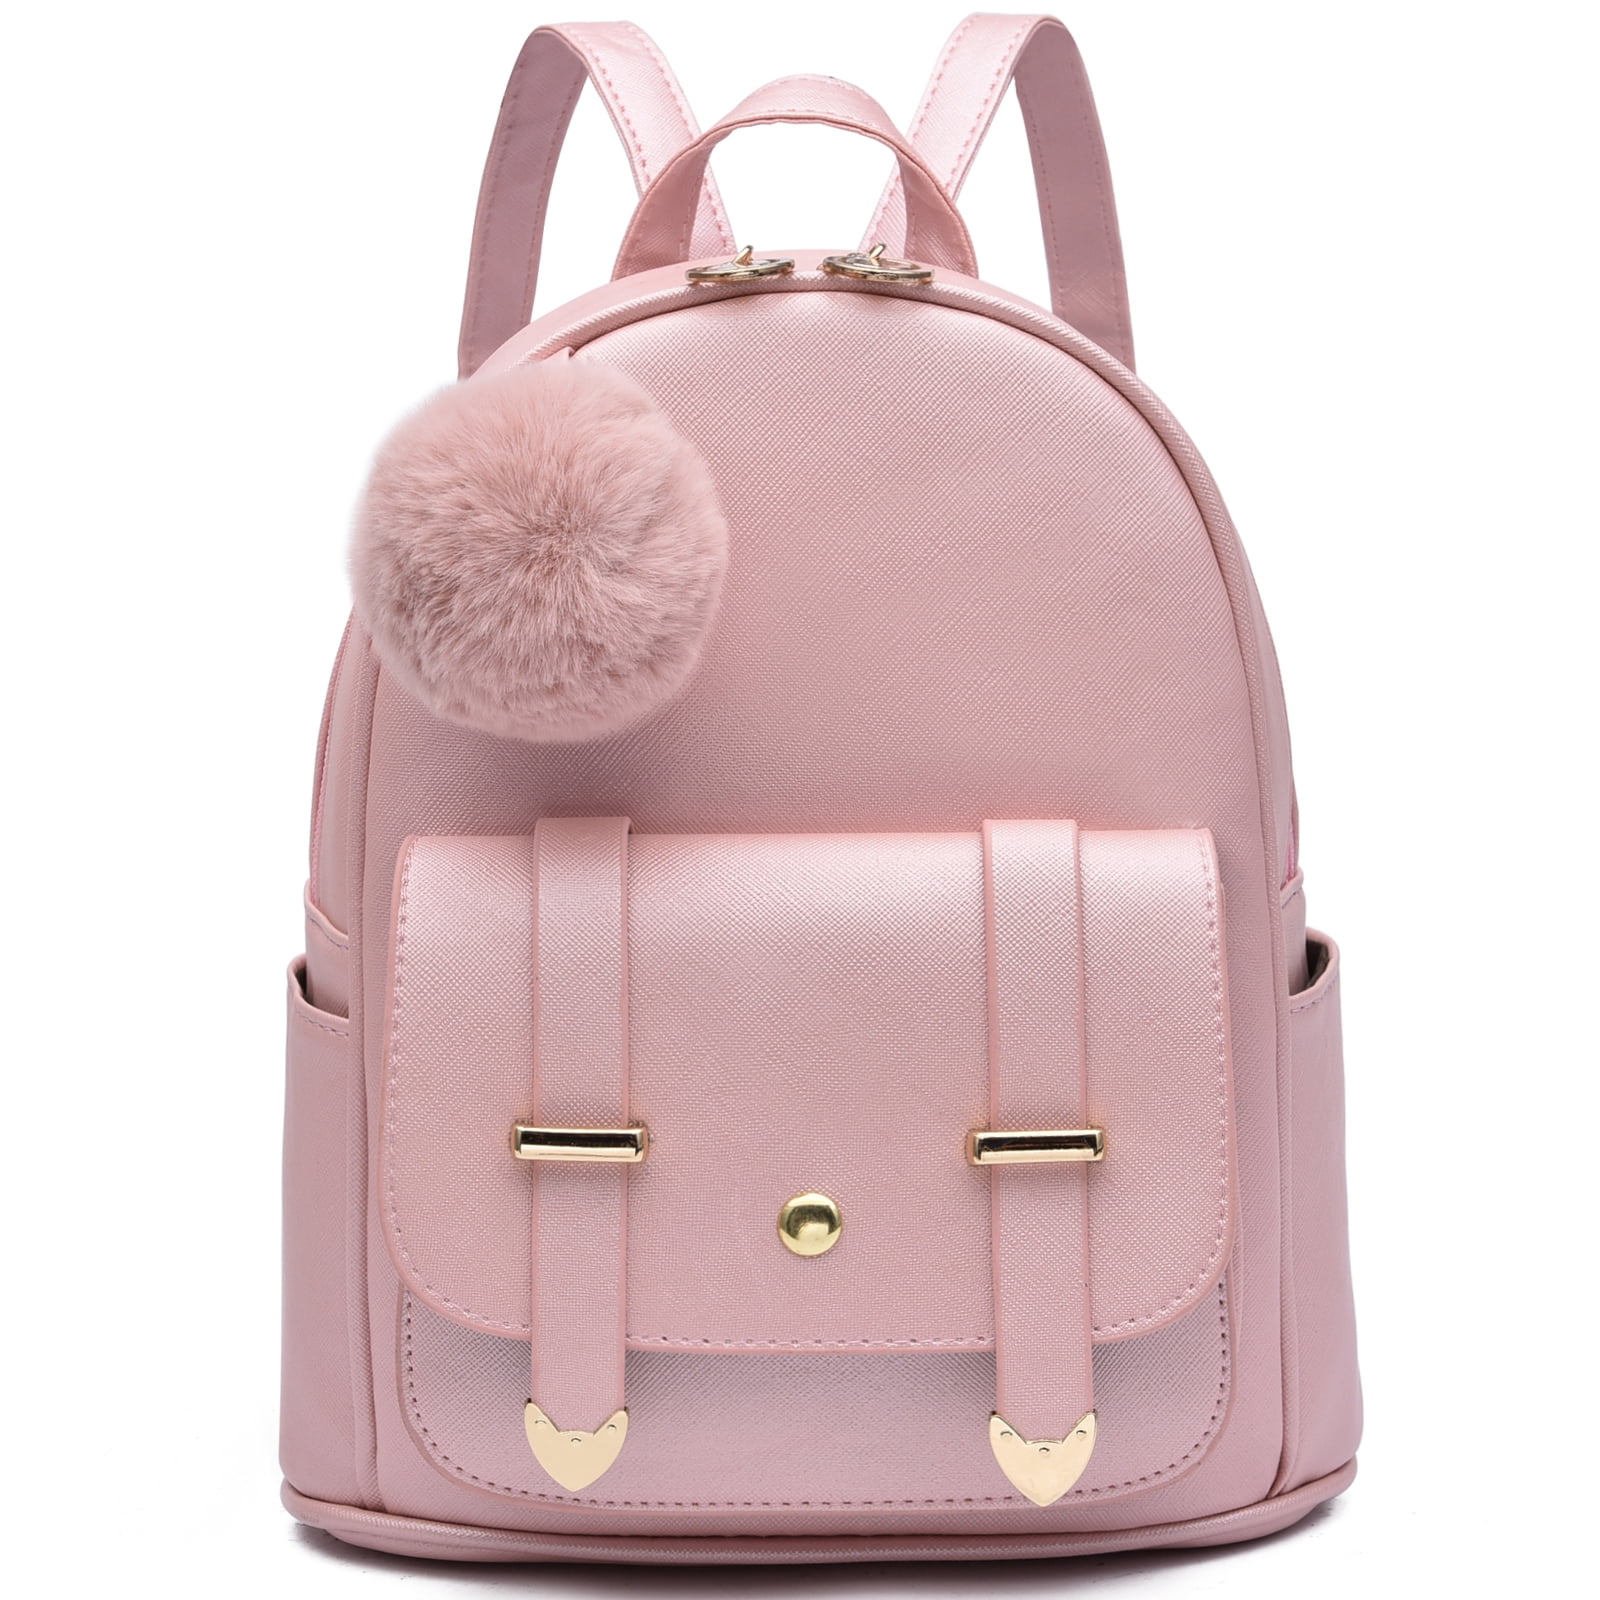 Jollebone outdoors pink gold Girls Teenage Mini PU Leather Backpack ...